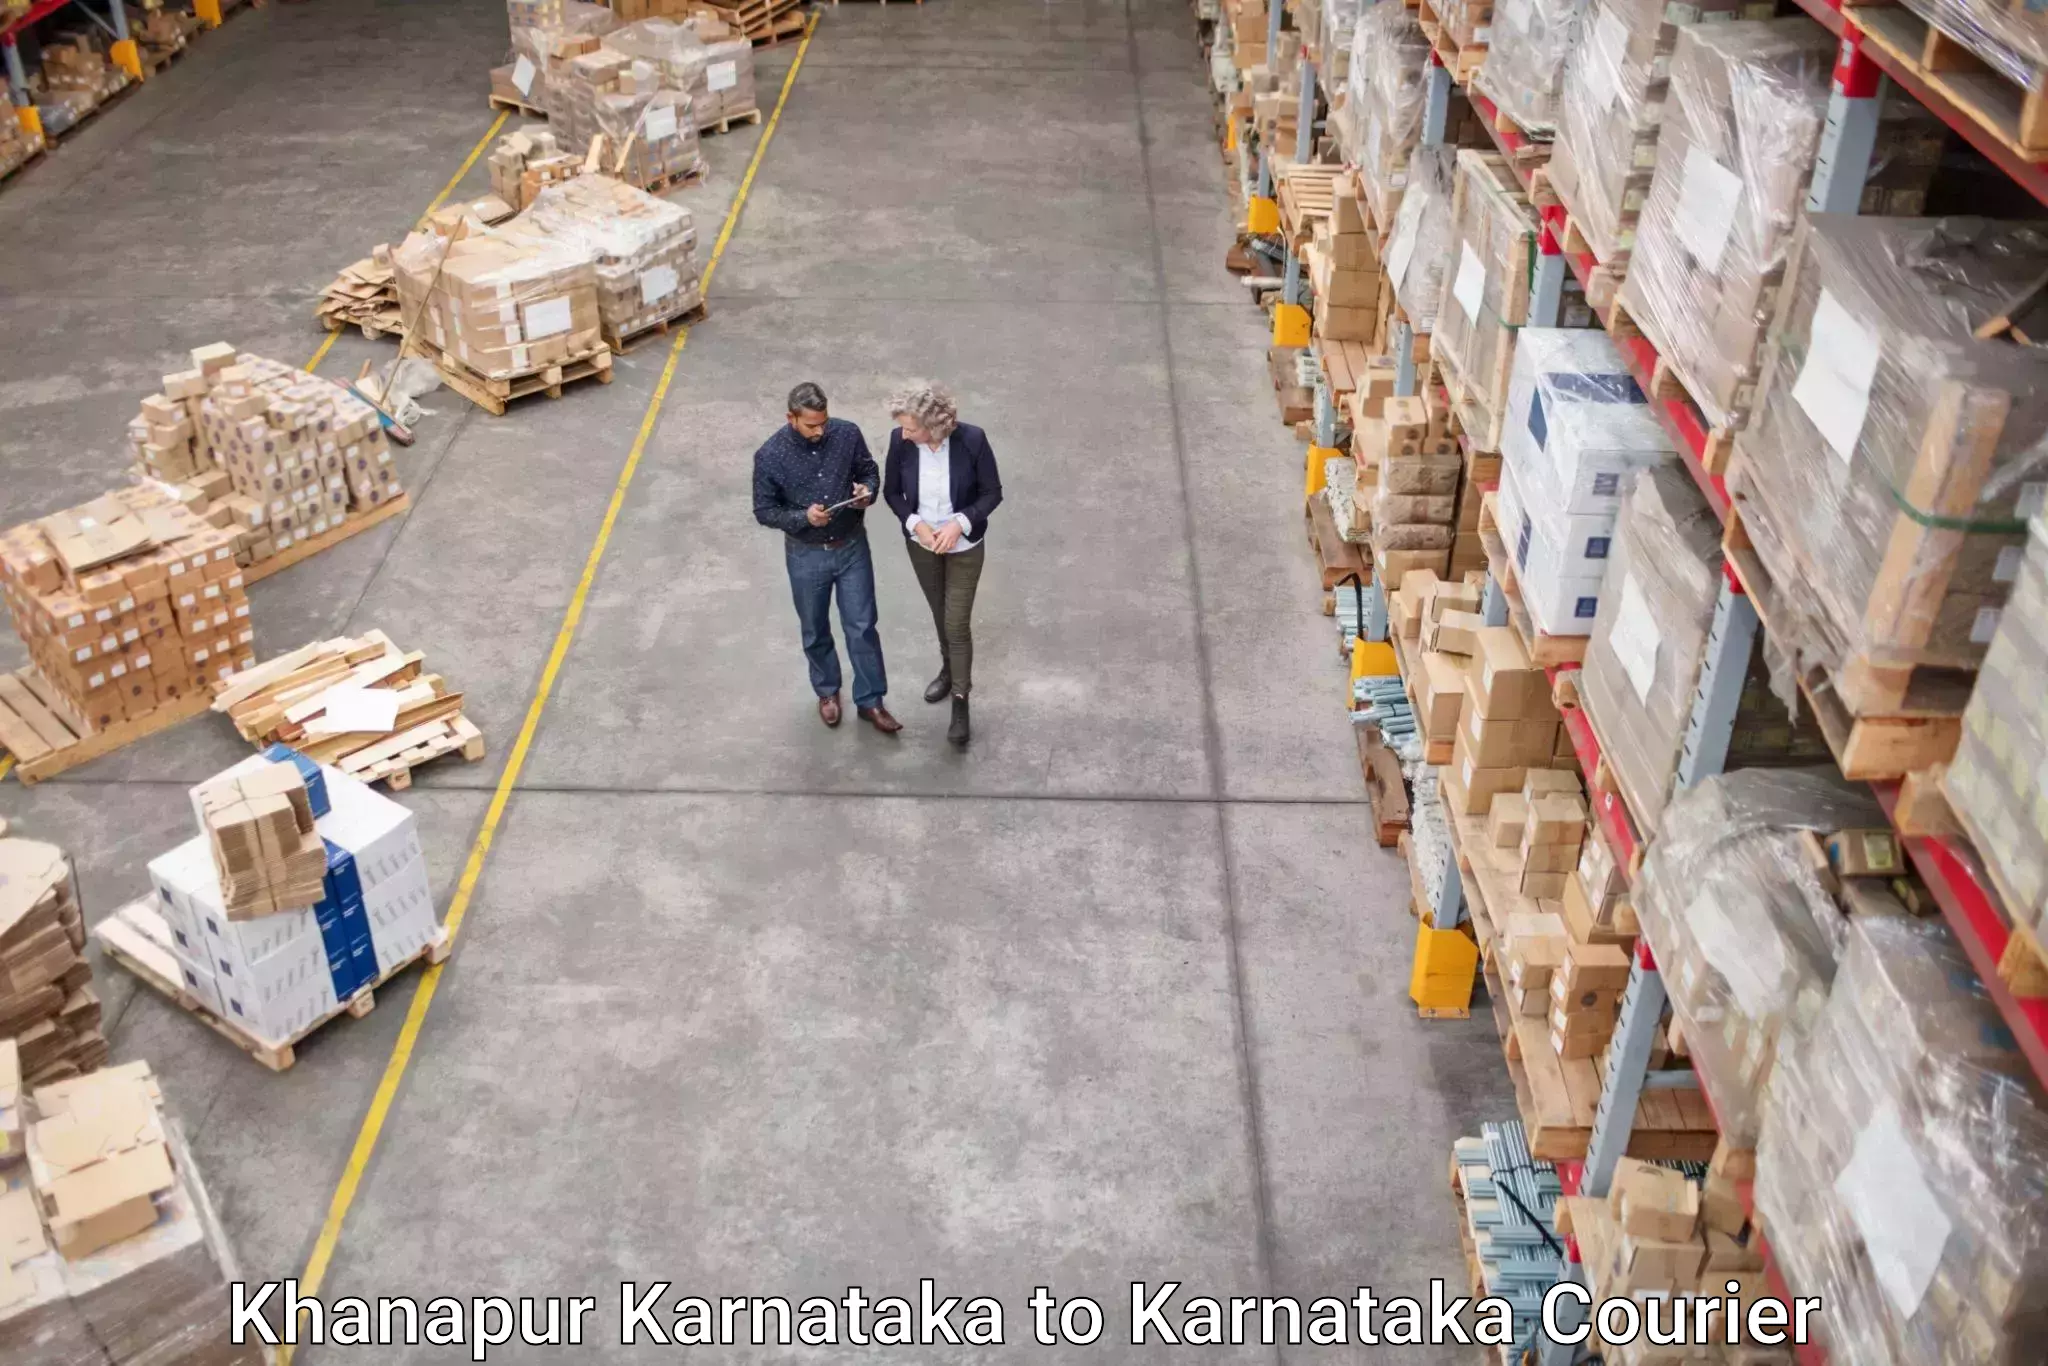 Cross-border shipping Khanapur Karnataka to Karnataka